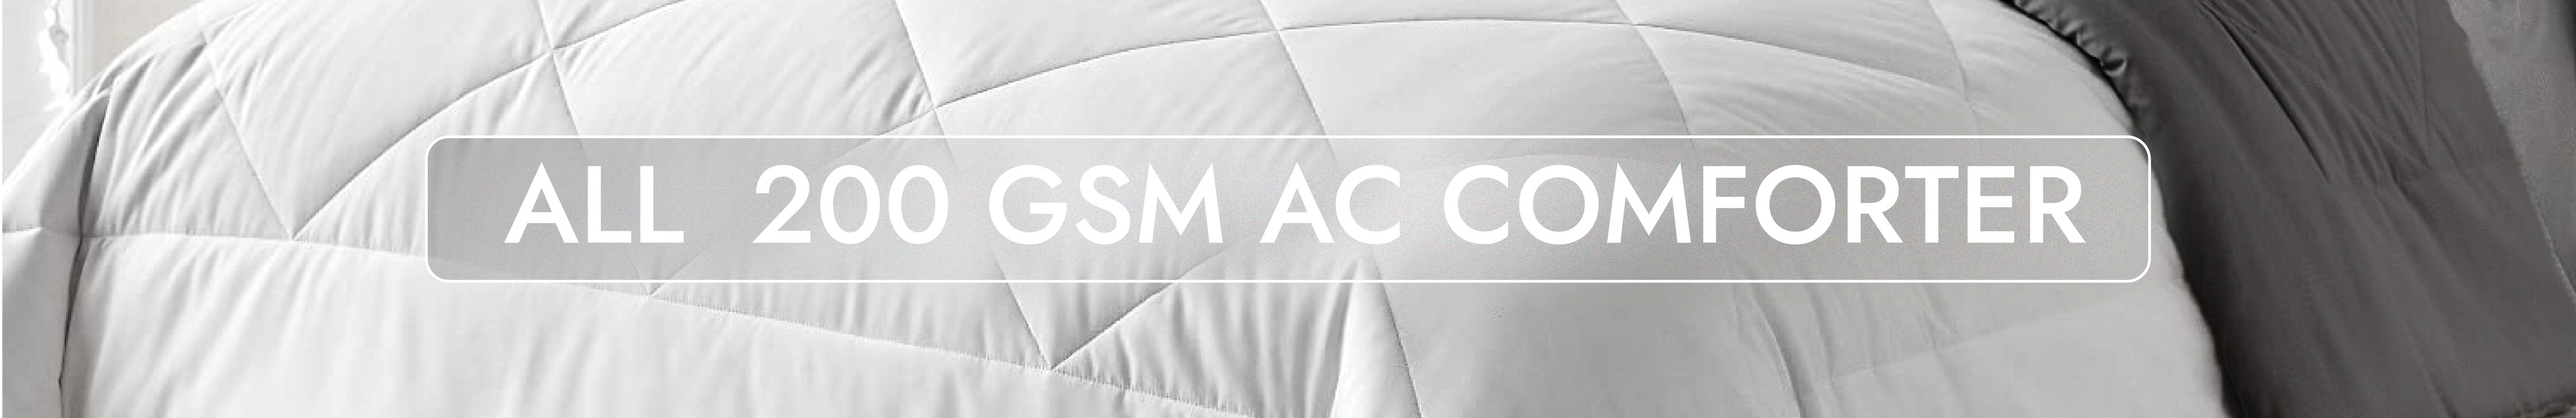 200 GSM AC Comforter